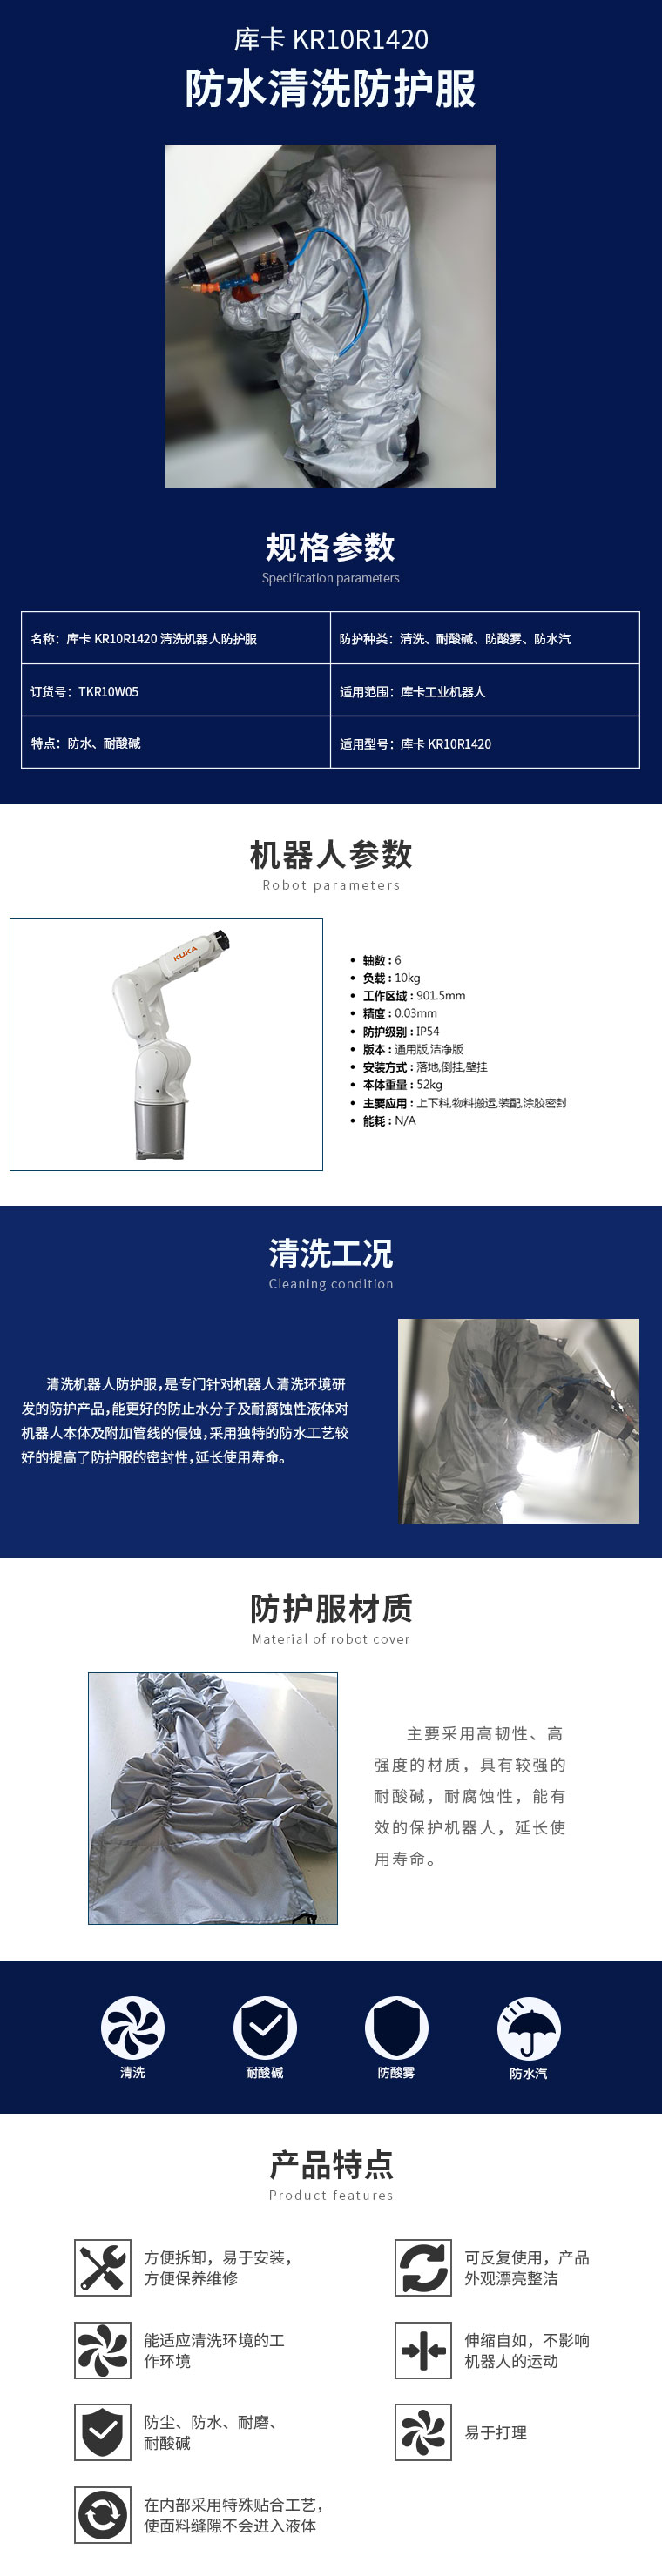 库卡-KR10R1420清洗机器人防护服-详情页.jpg